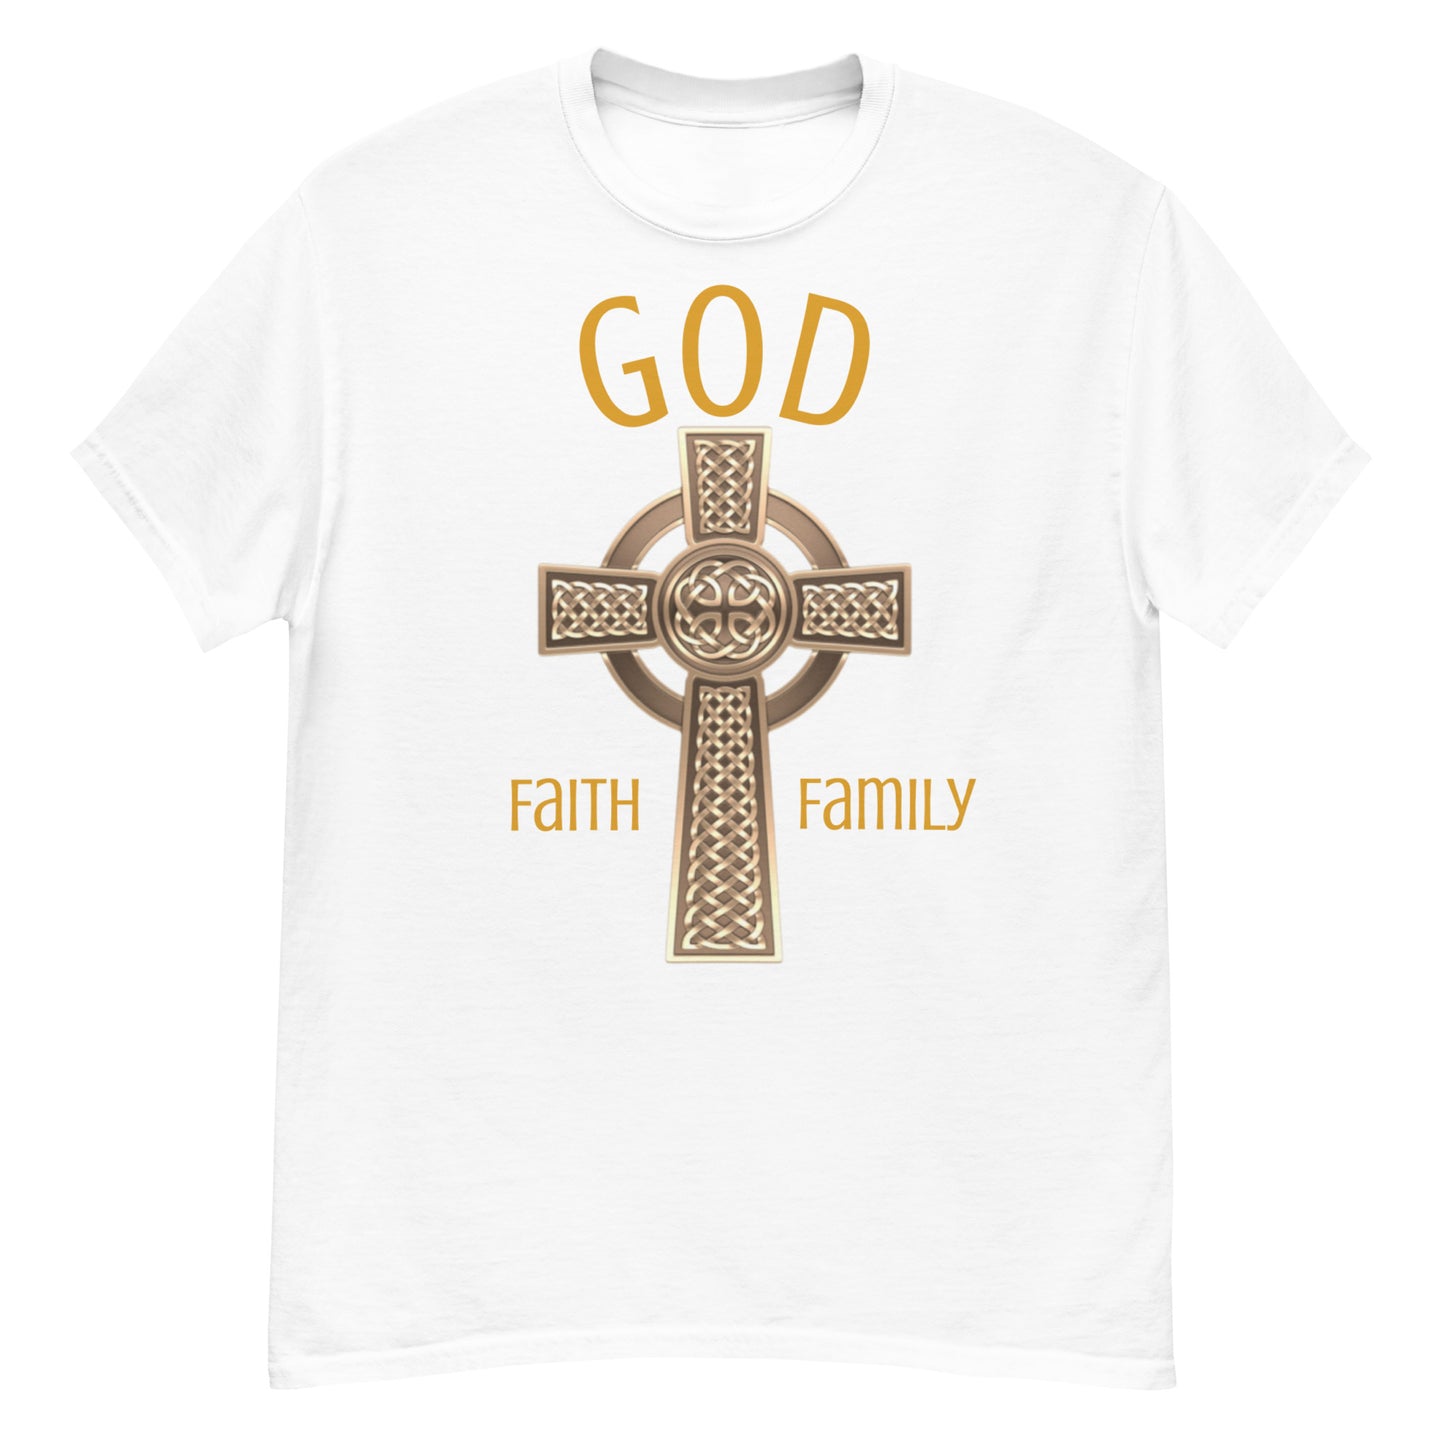 God Faith Family - classic tee